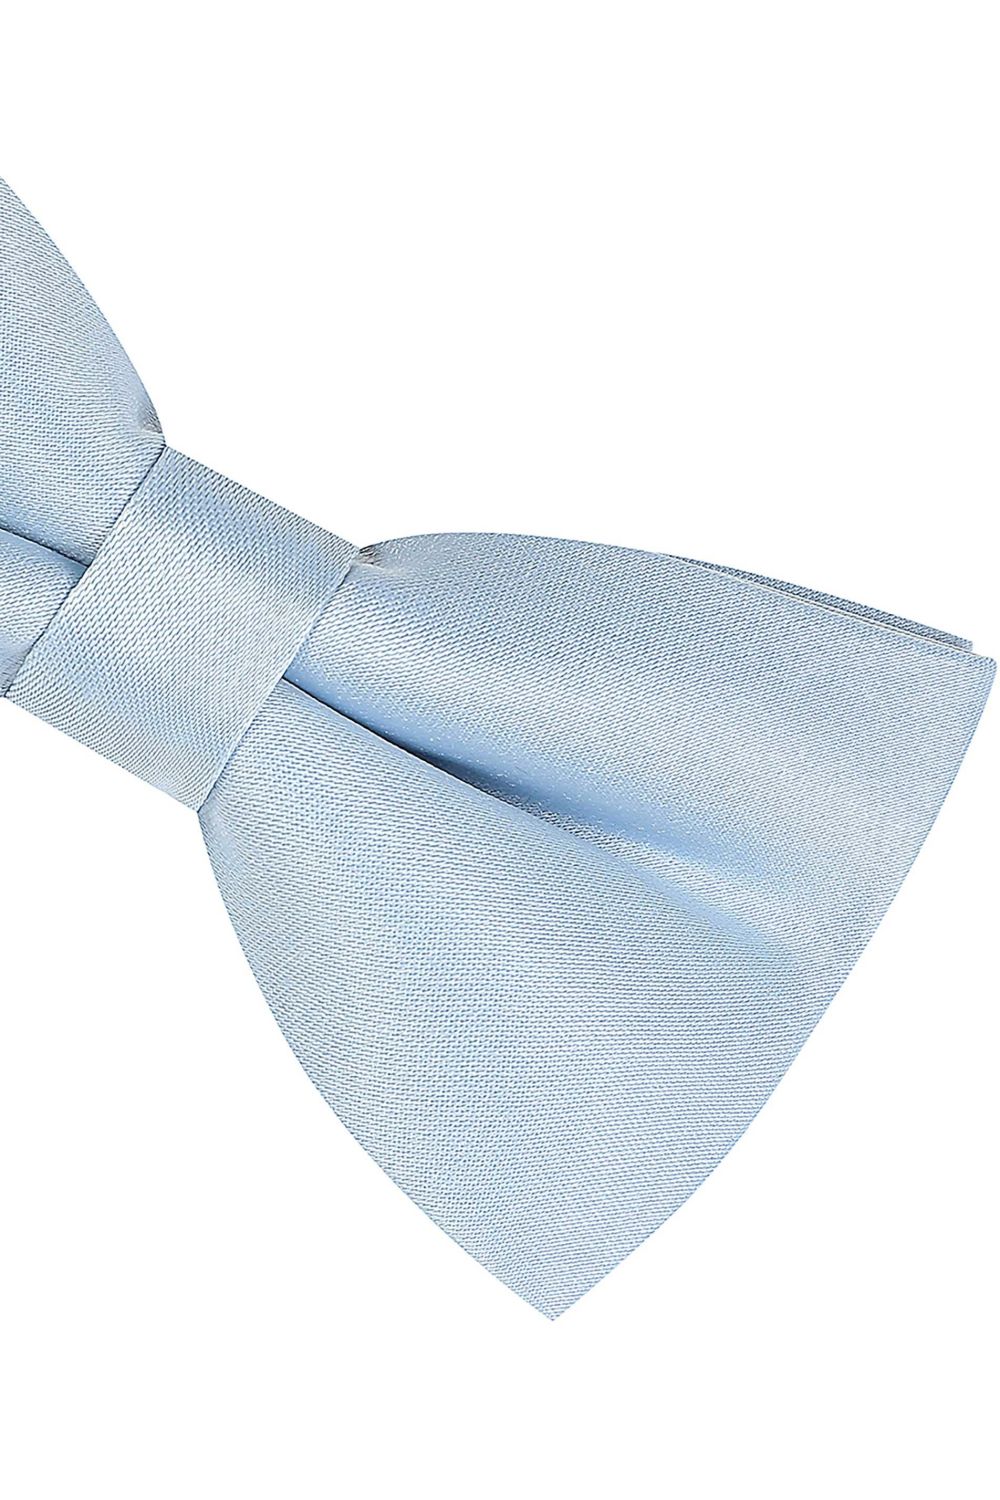 Plain pastel blue satin classic mens bow tie